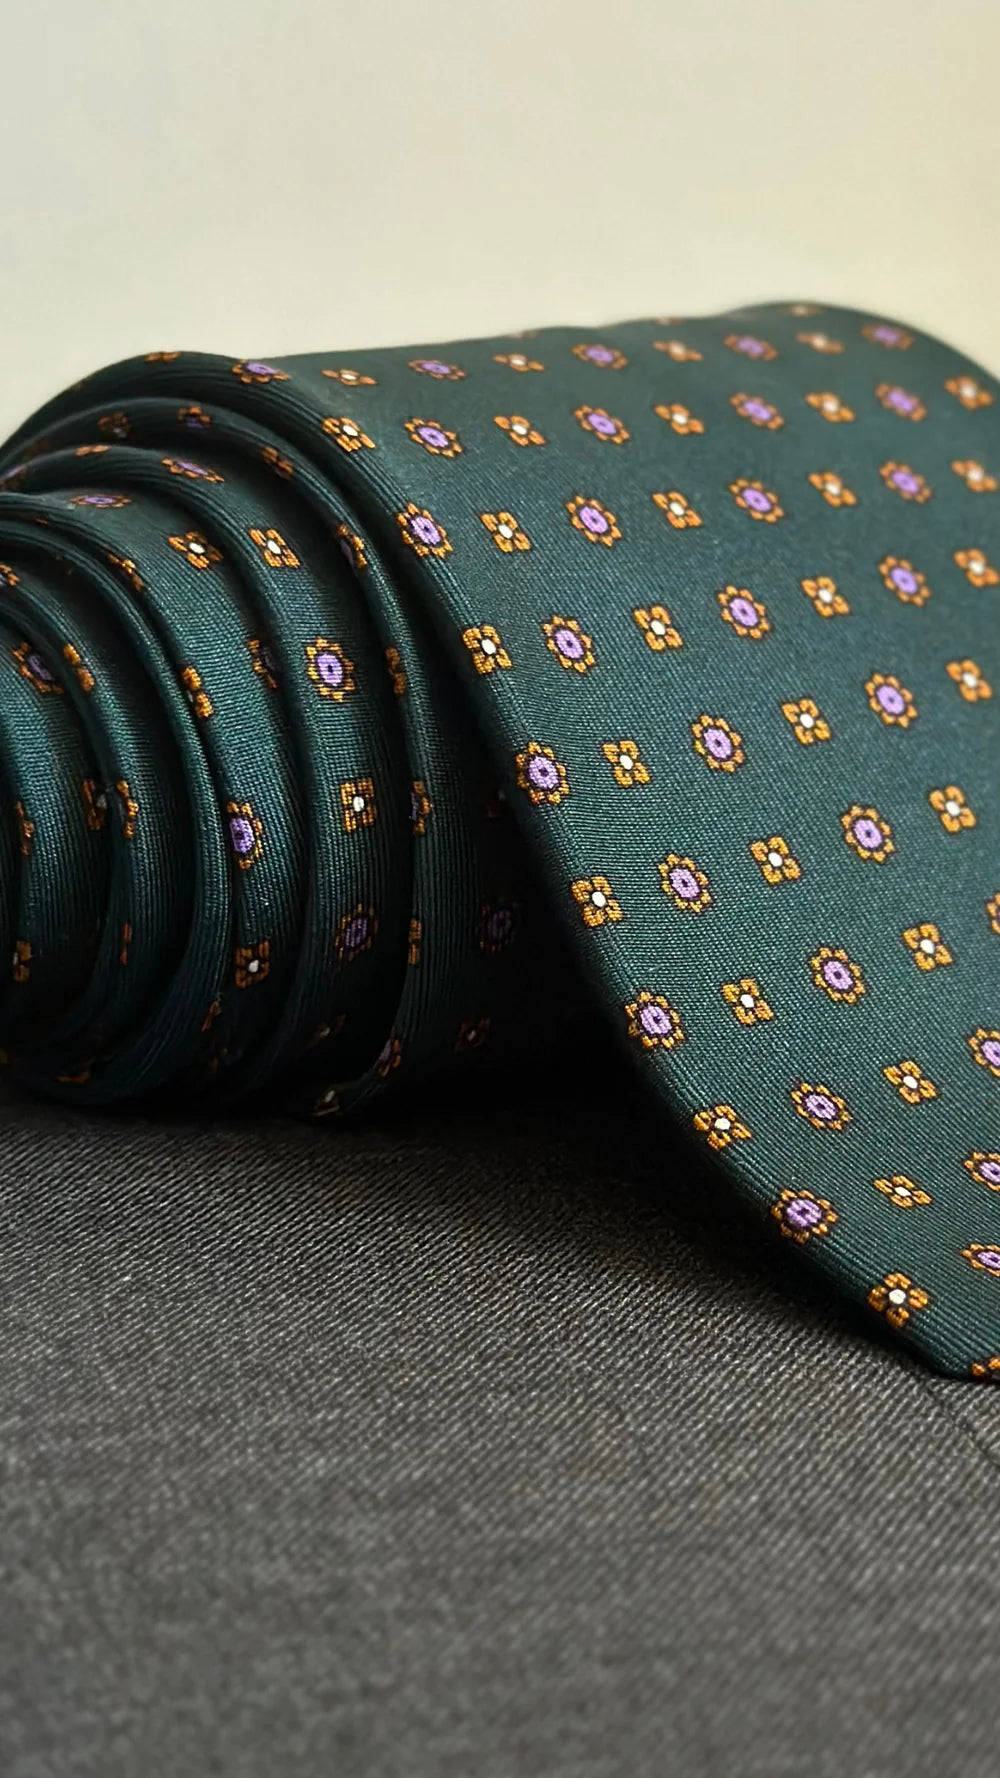 Corbata Emblematic verde oscuro geométricos flores